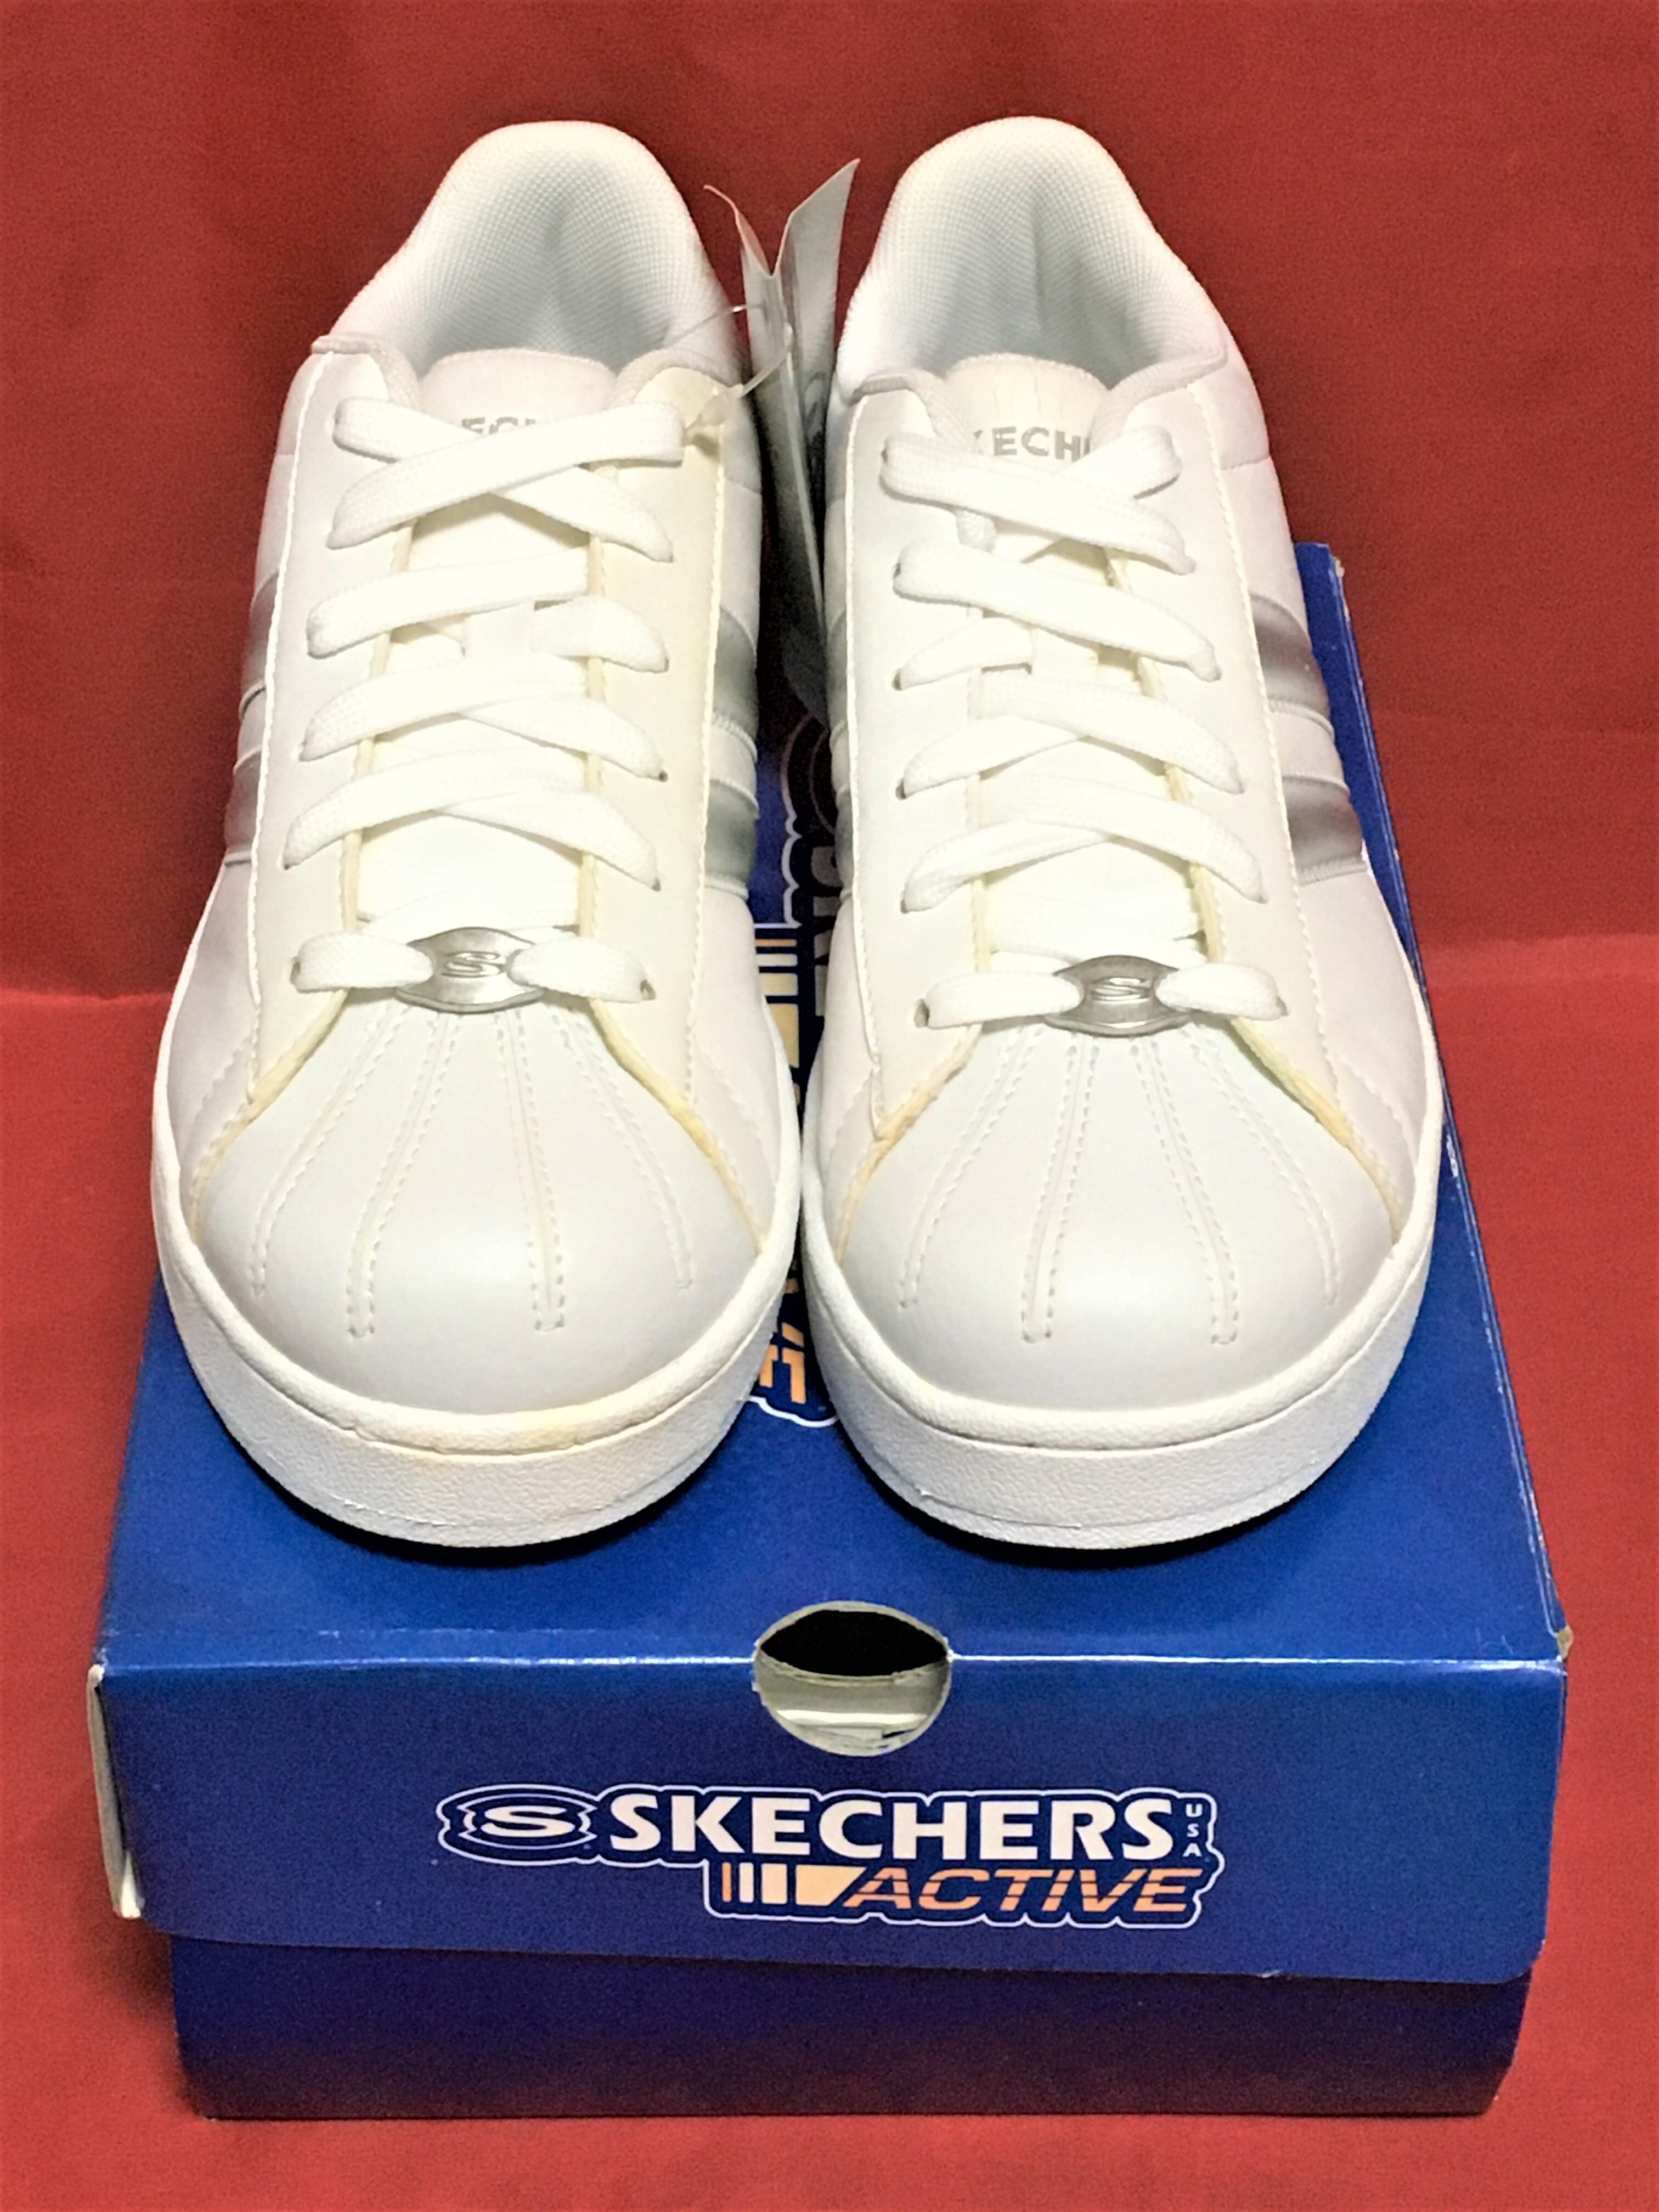 SKECHERS（スケッチャーズ） SKL1452/WSL 7.5 24.5cm 205 freestars